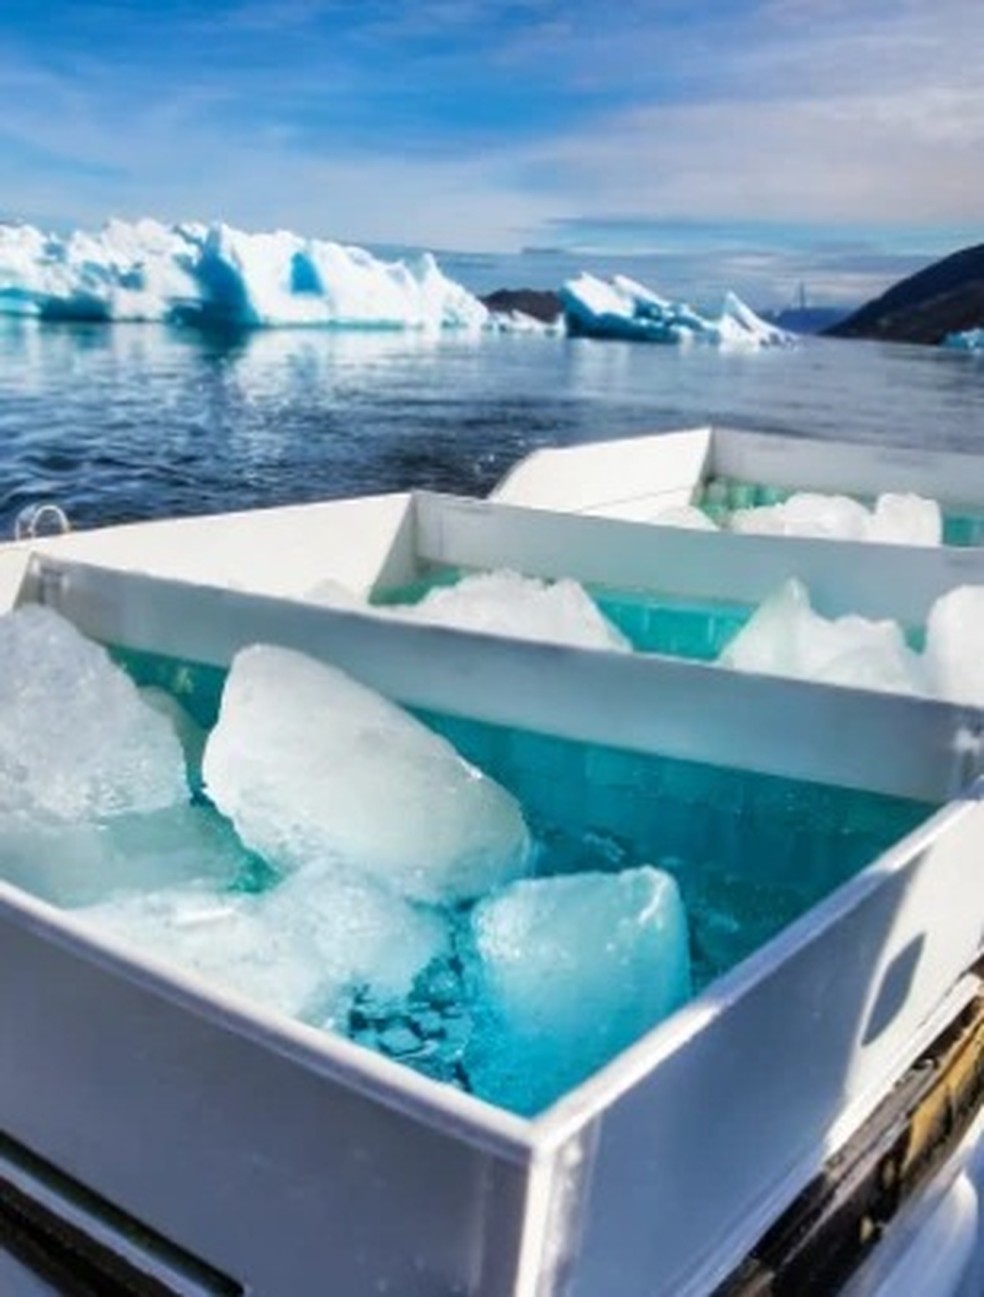 Amostras de gelo coletadas — Foto: Divulgação